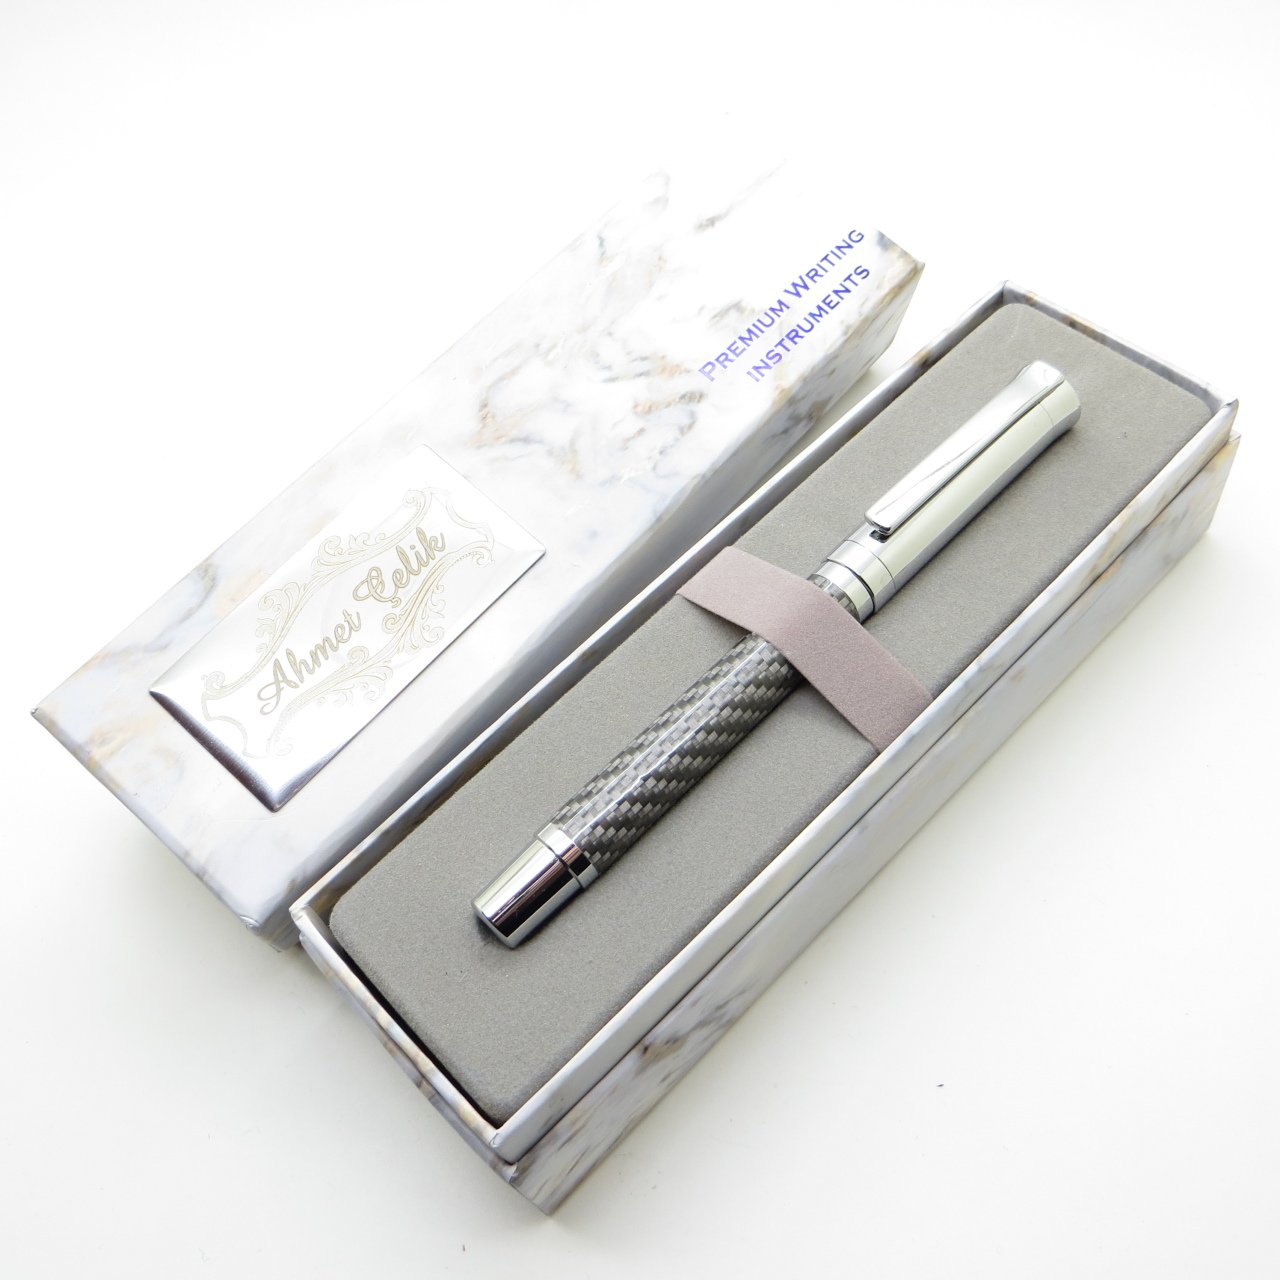 Wings Marble R69 격자 무늬 섬유 크롬 롤러 펜, 신제품 특수 펜 | 선물용 펜